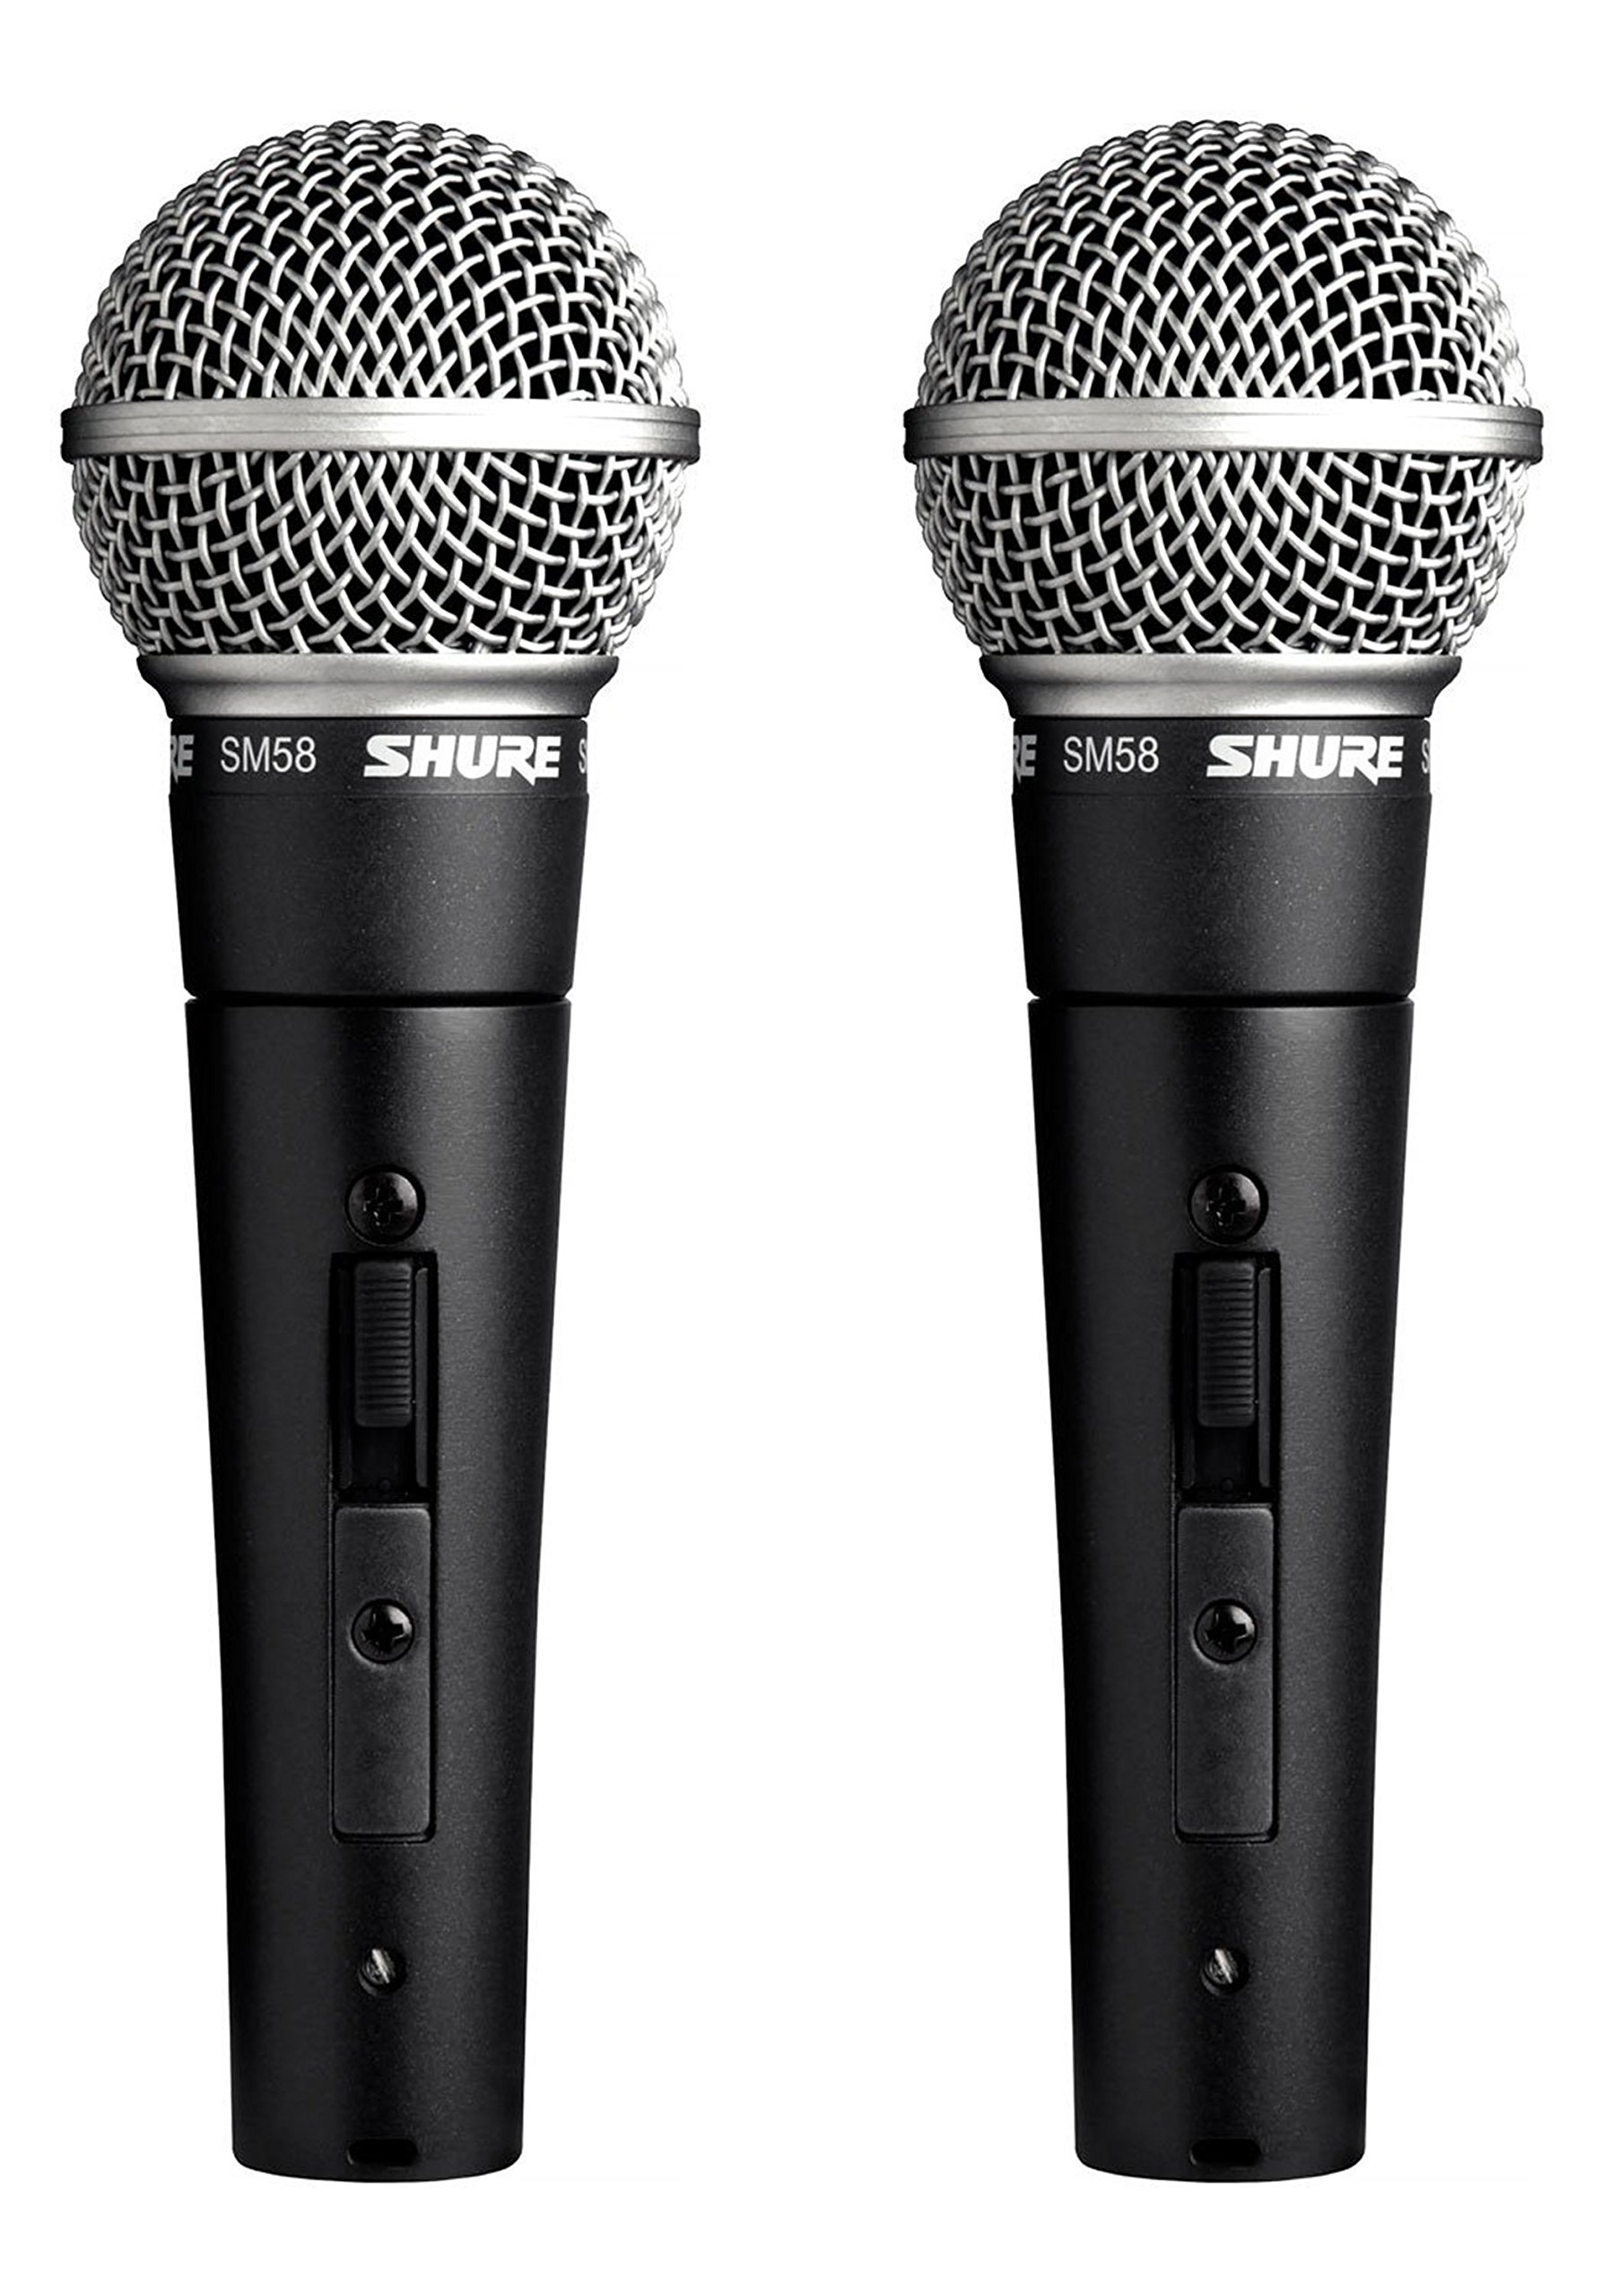 Shure Microphone vocal professionnel SM58S avec interrupteur marche/arrêt (lot de 2)